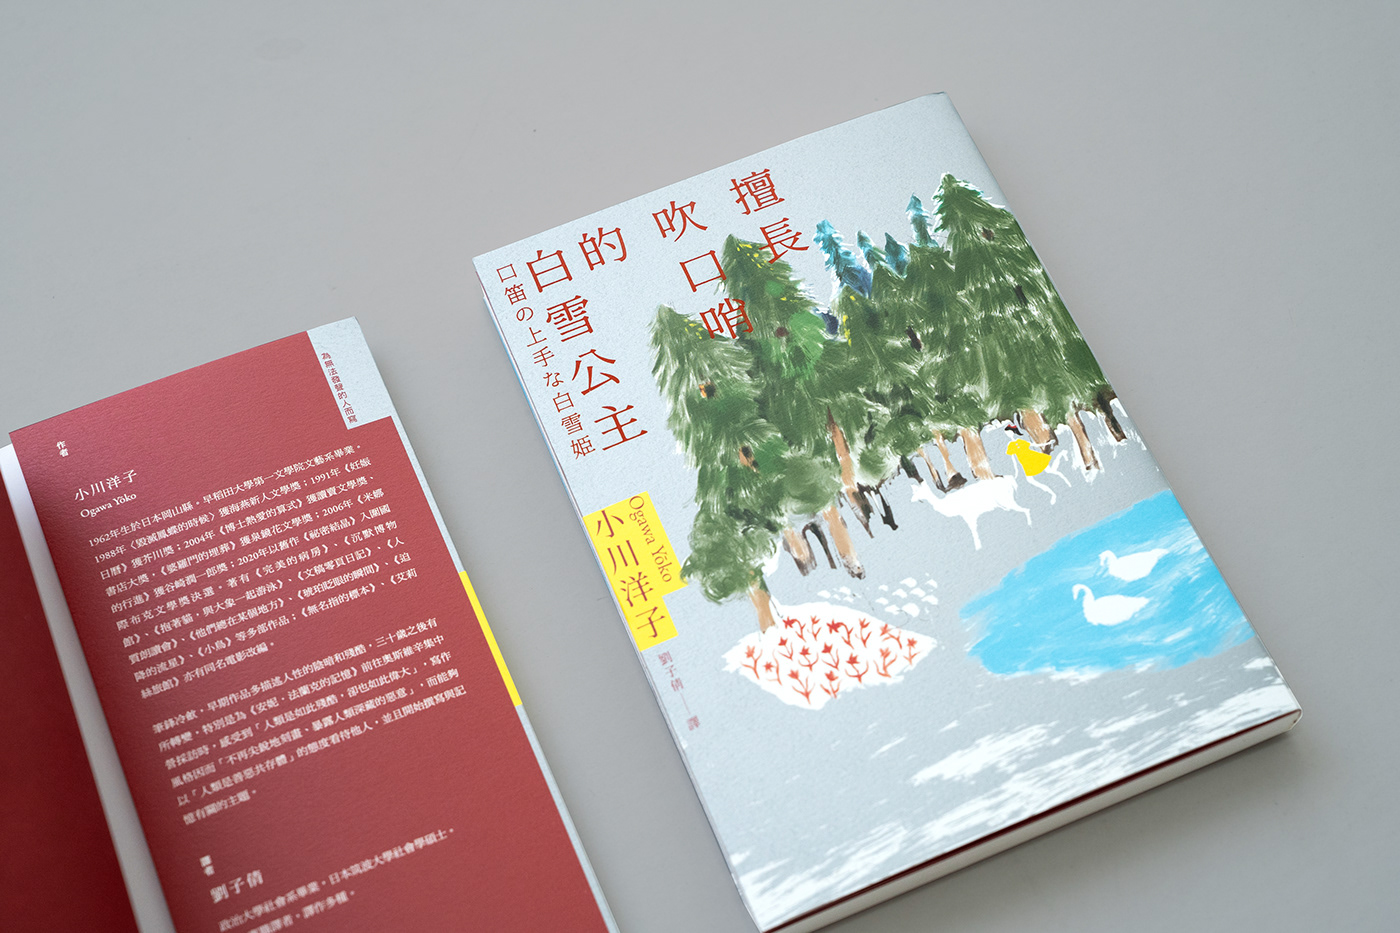 書封設計 book cover book cover design art 封面設計 小川洋子 木馬文化